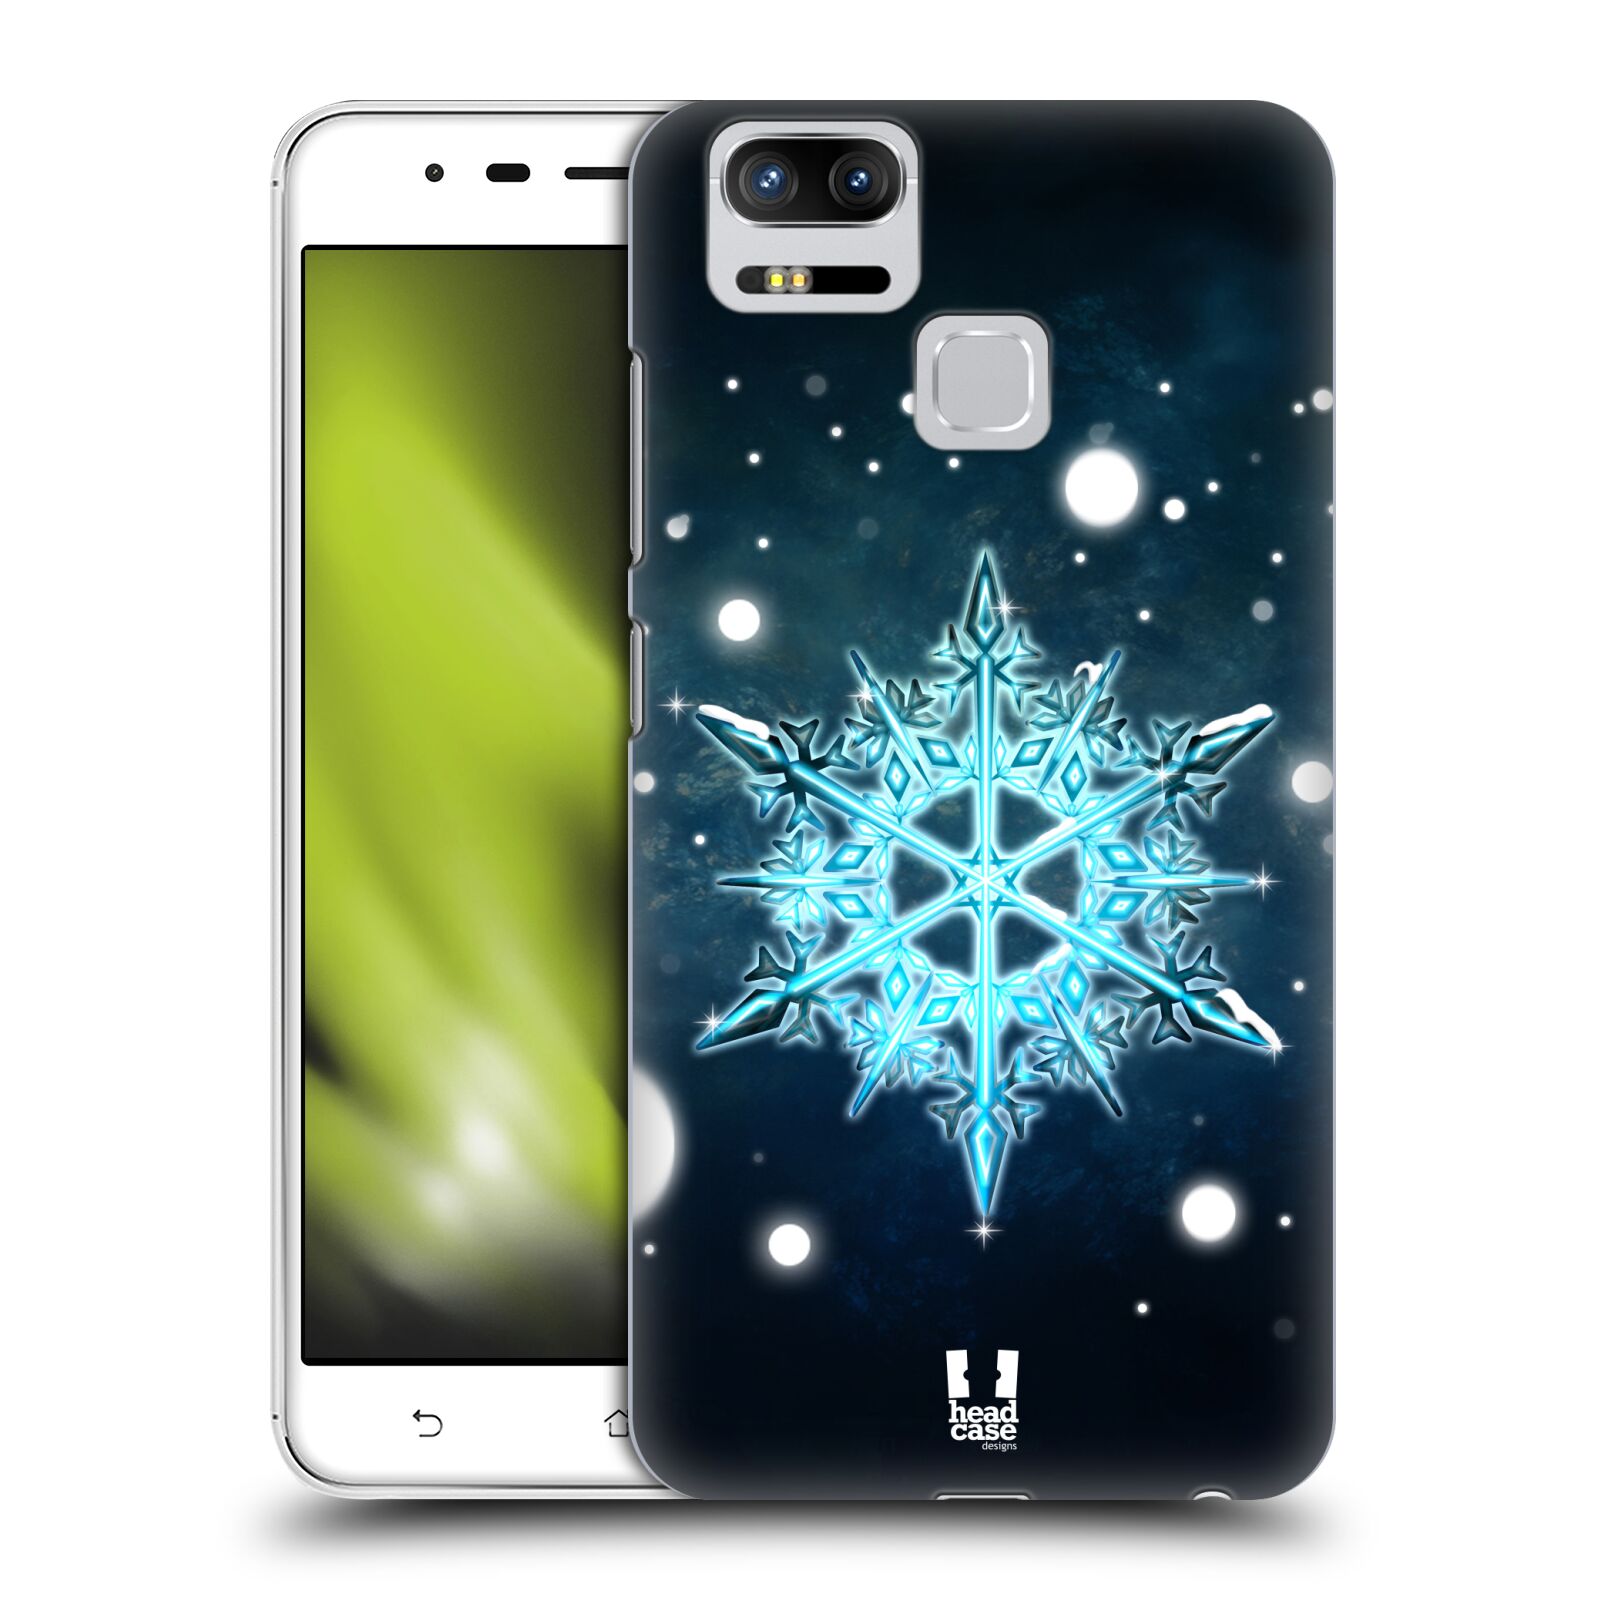 HEAD CASE plastový obal na mobil Asus Zenfone 3 Zoom ZE553KL vzor Sněžné vločky modrá tyrkys